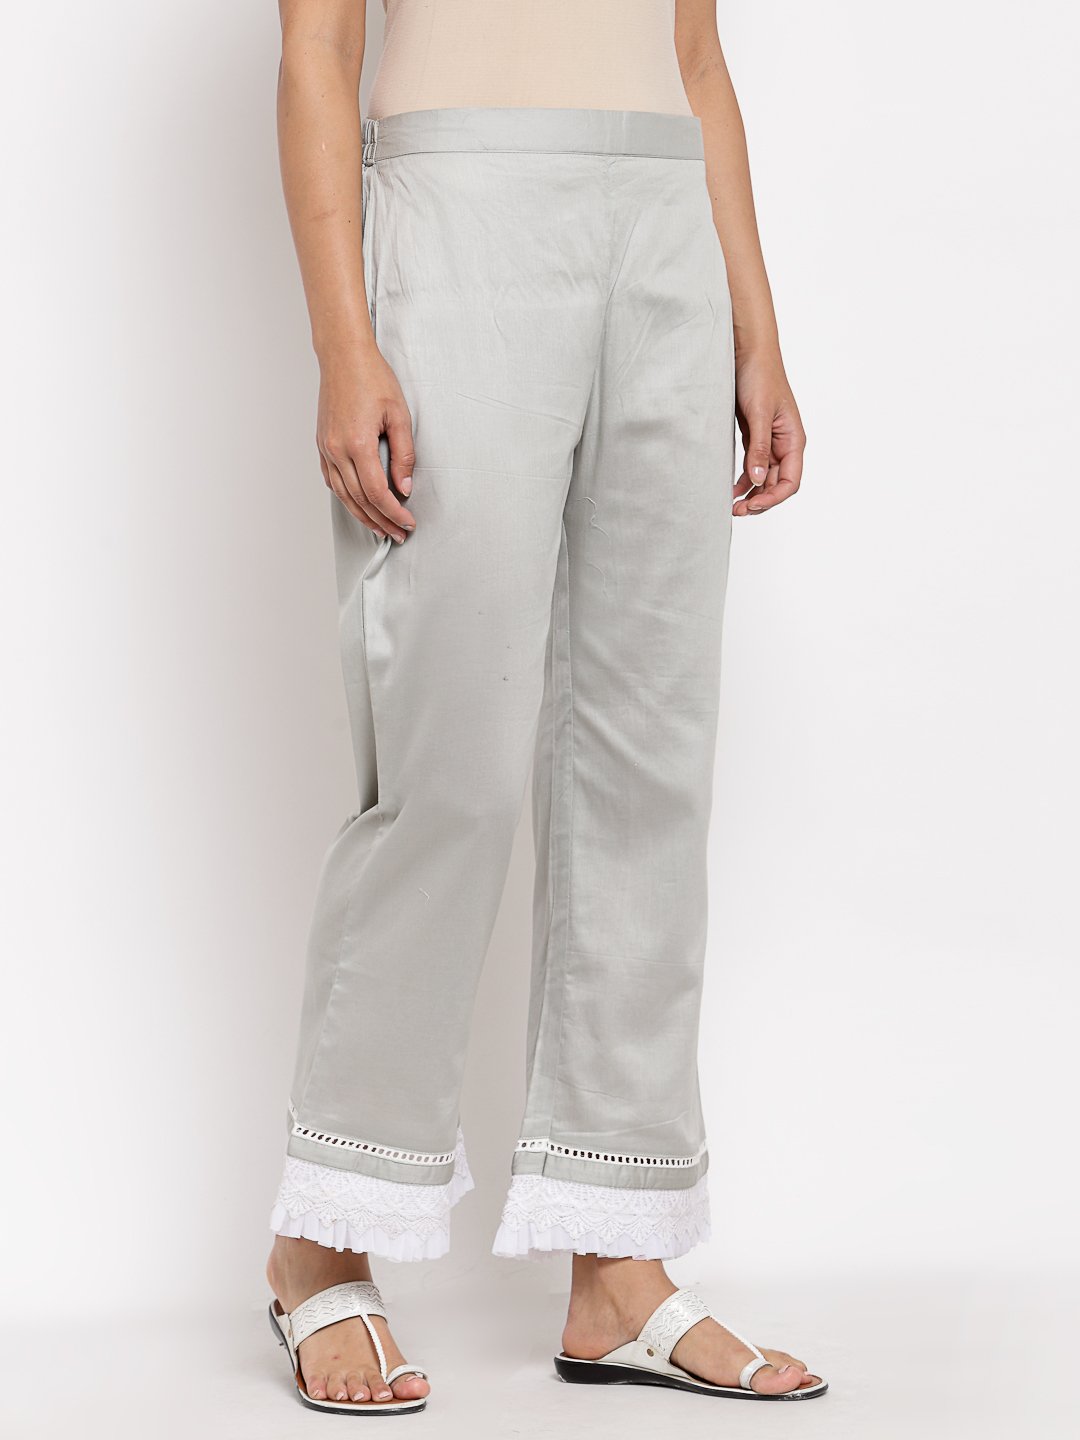 Women Grey Cotton Trouser by Myshka (1 Pc Set)